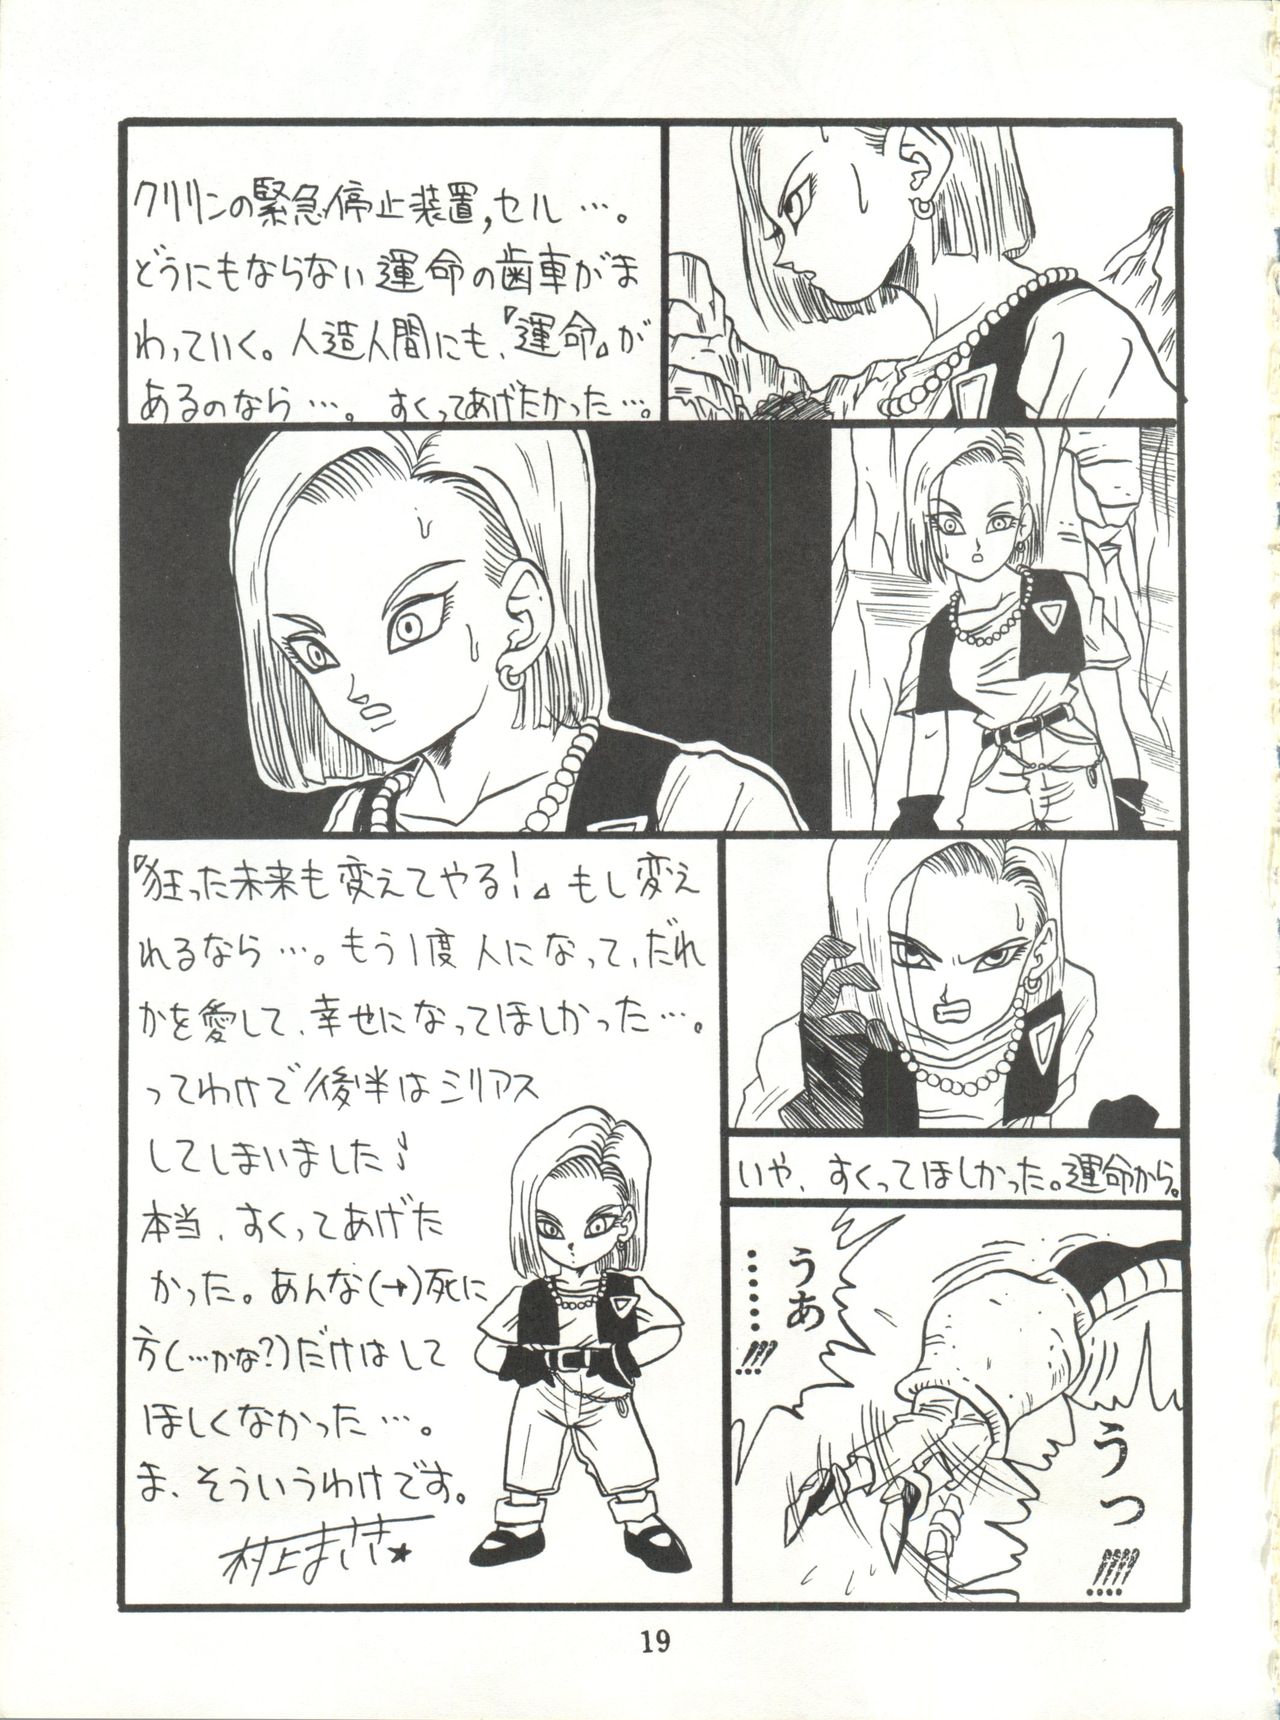 [Project Pikun] Replicate (Dragon Ball Z) page 19 full